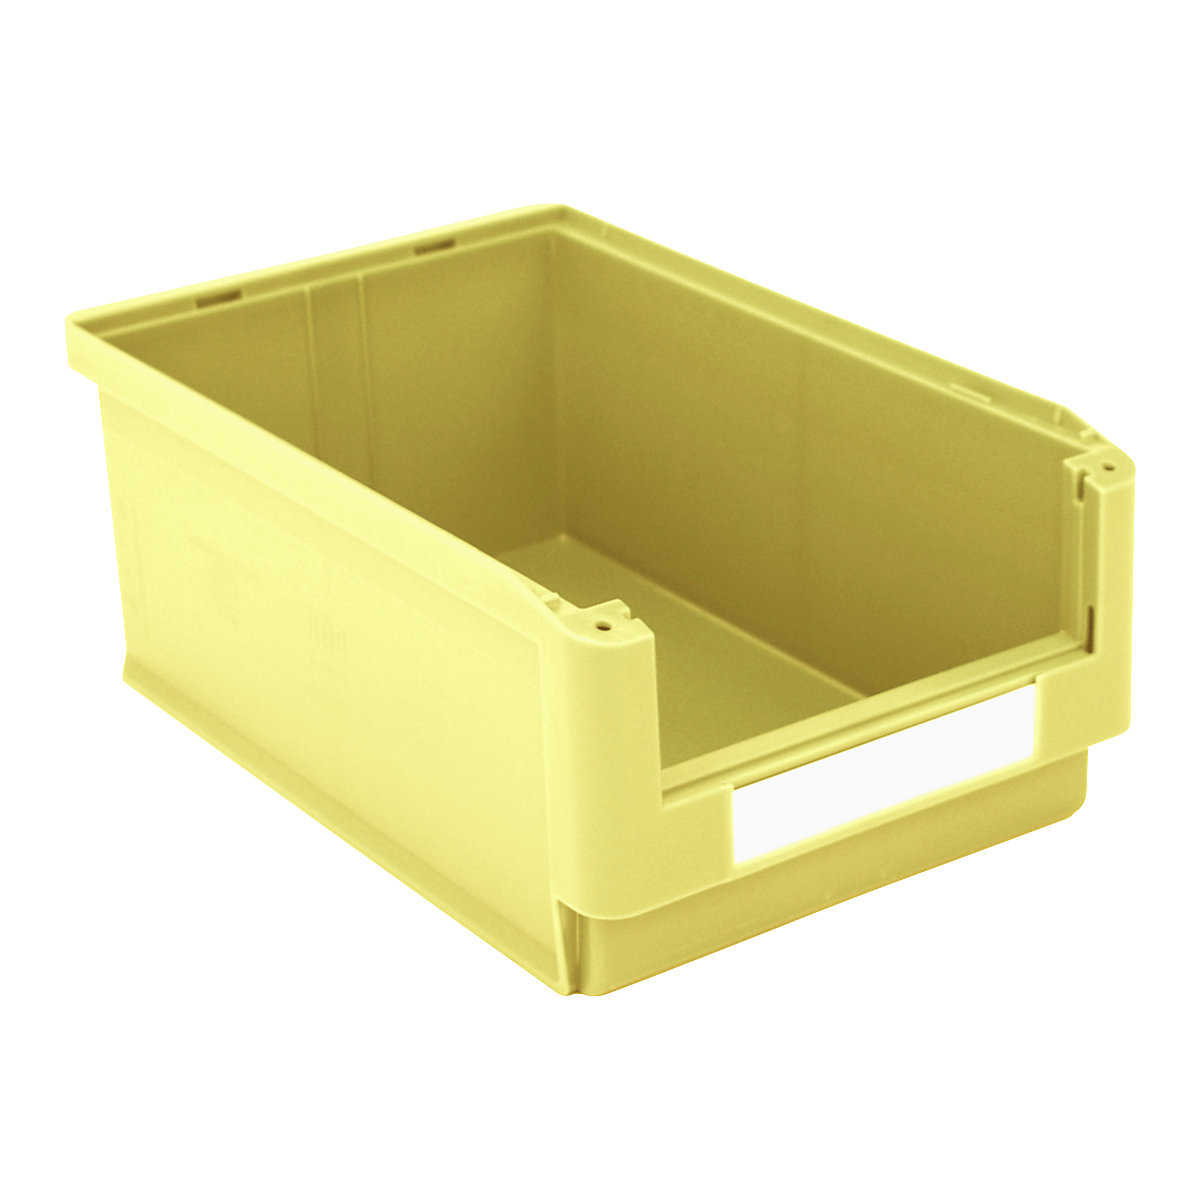 Caja visualizable – BITO, L x A x H 500 x 313 x 200 mm, UE 6 unid., amarillo-1